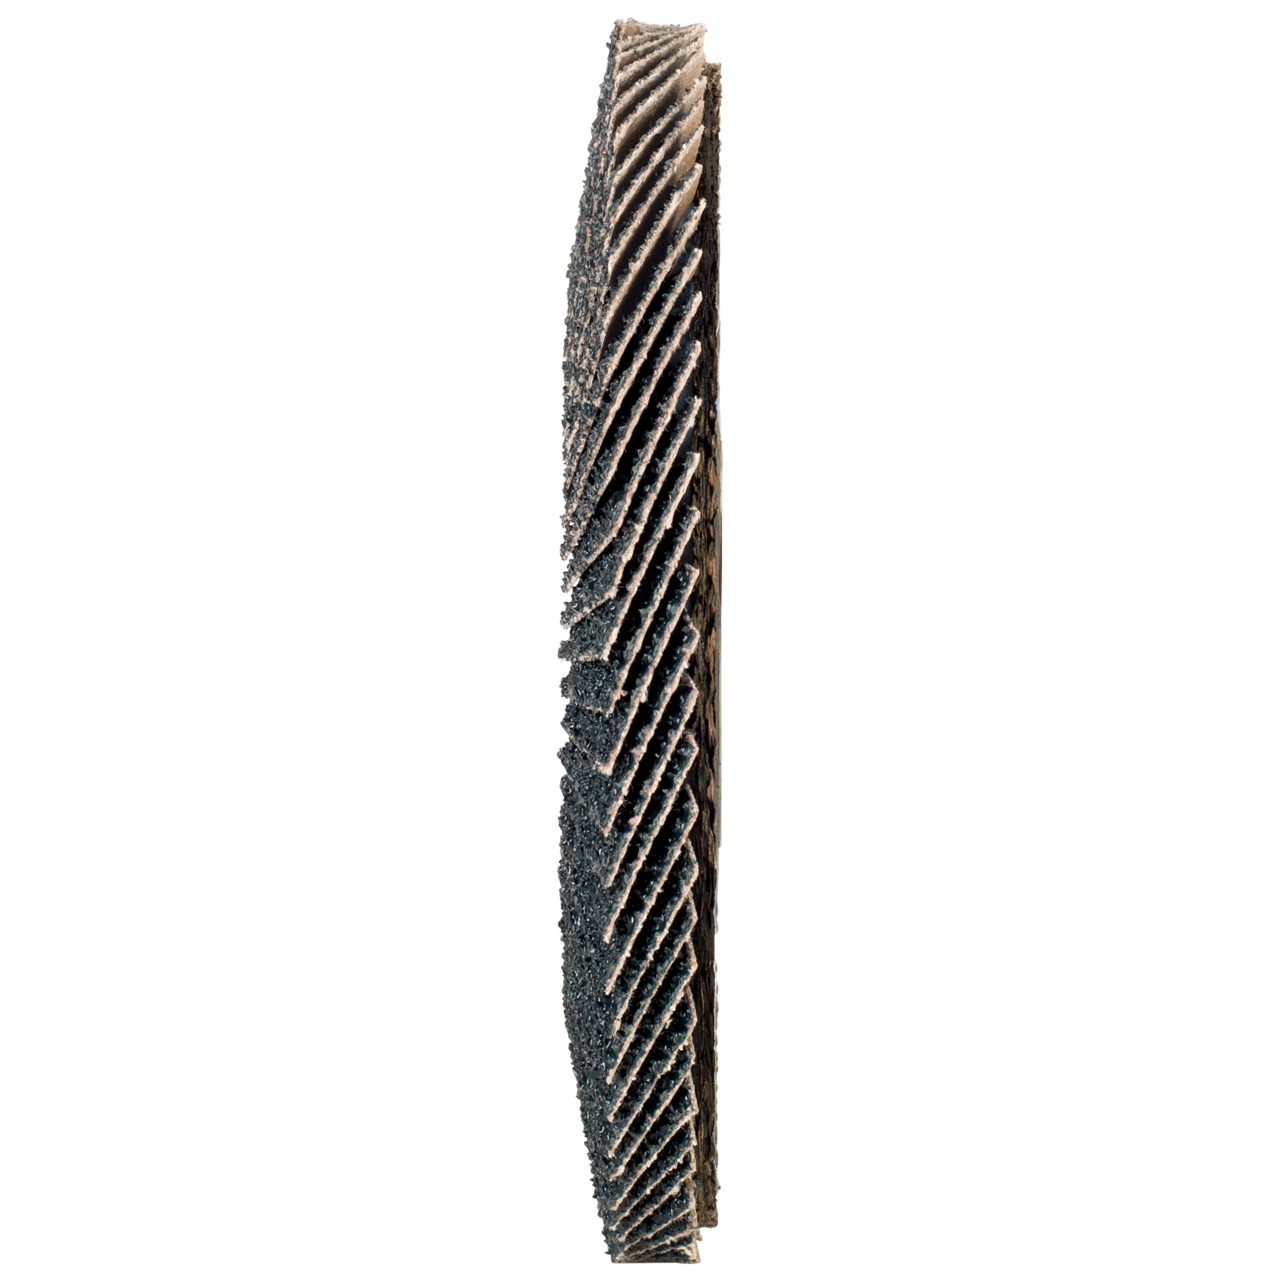 Rondella dentata Tyrolit DxH 178x22.2 2in1 per acciaio e acciaio inox, P60, forma: 28A - versione diritta (versione con corpo portante in fibra di vetro), Art. 668697